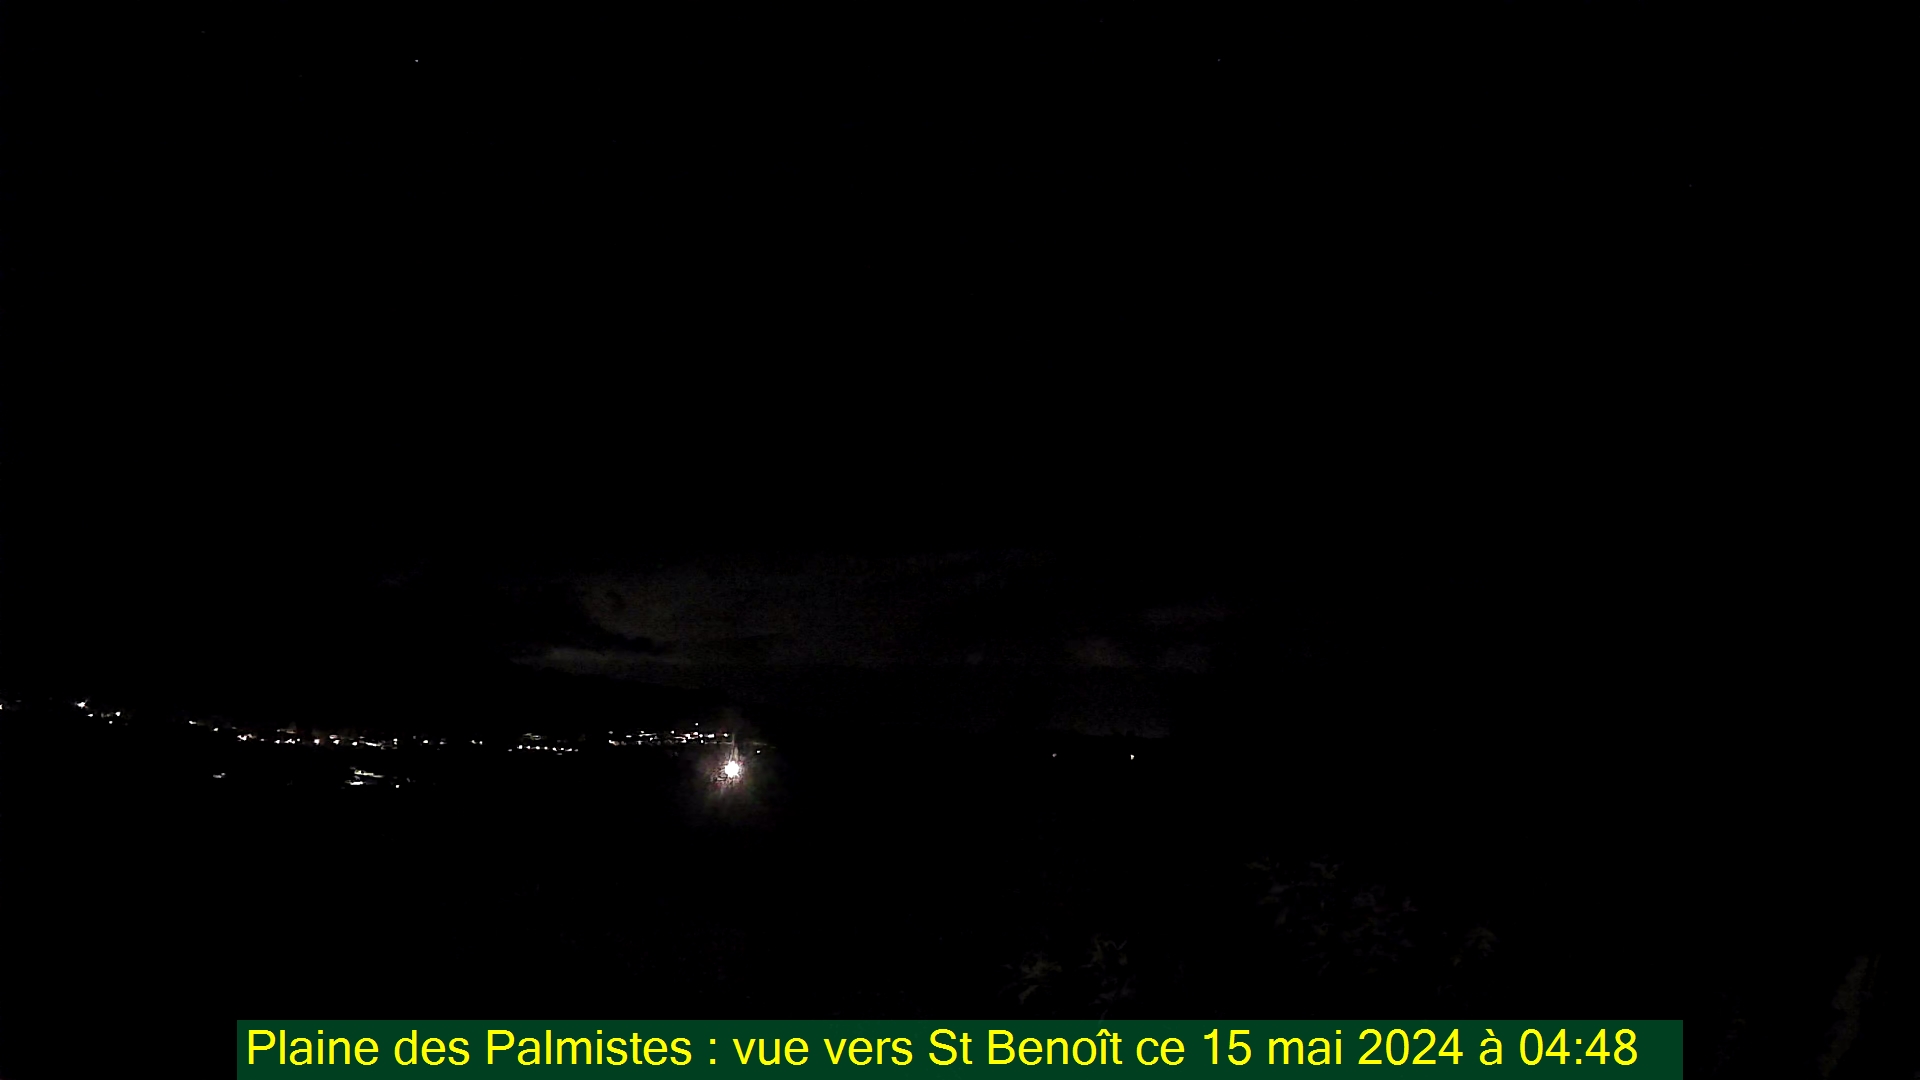 Saint-Denis (Réunion) Søn. 04:50